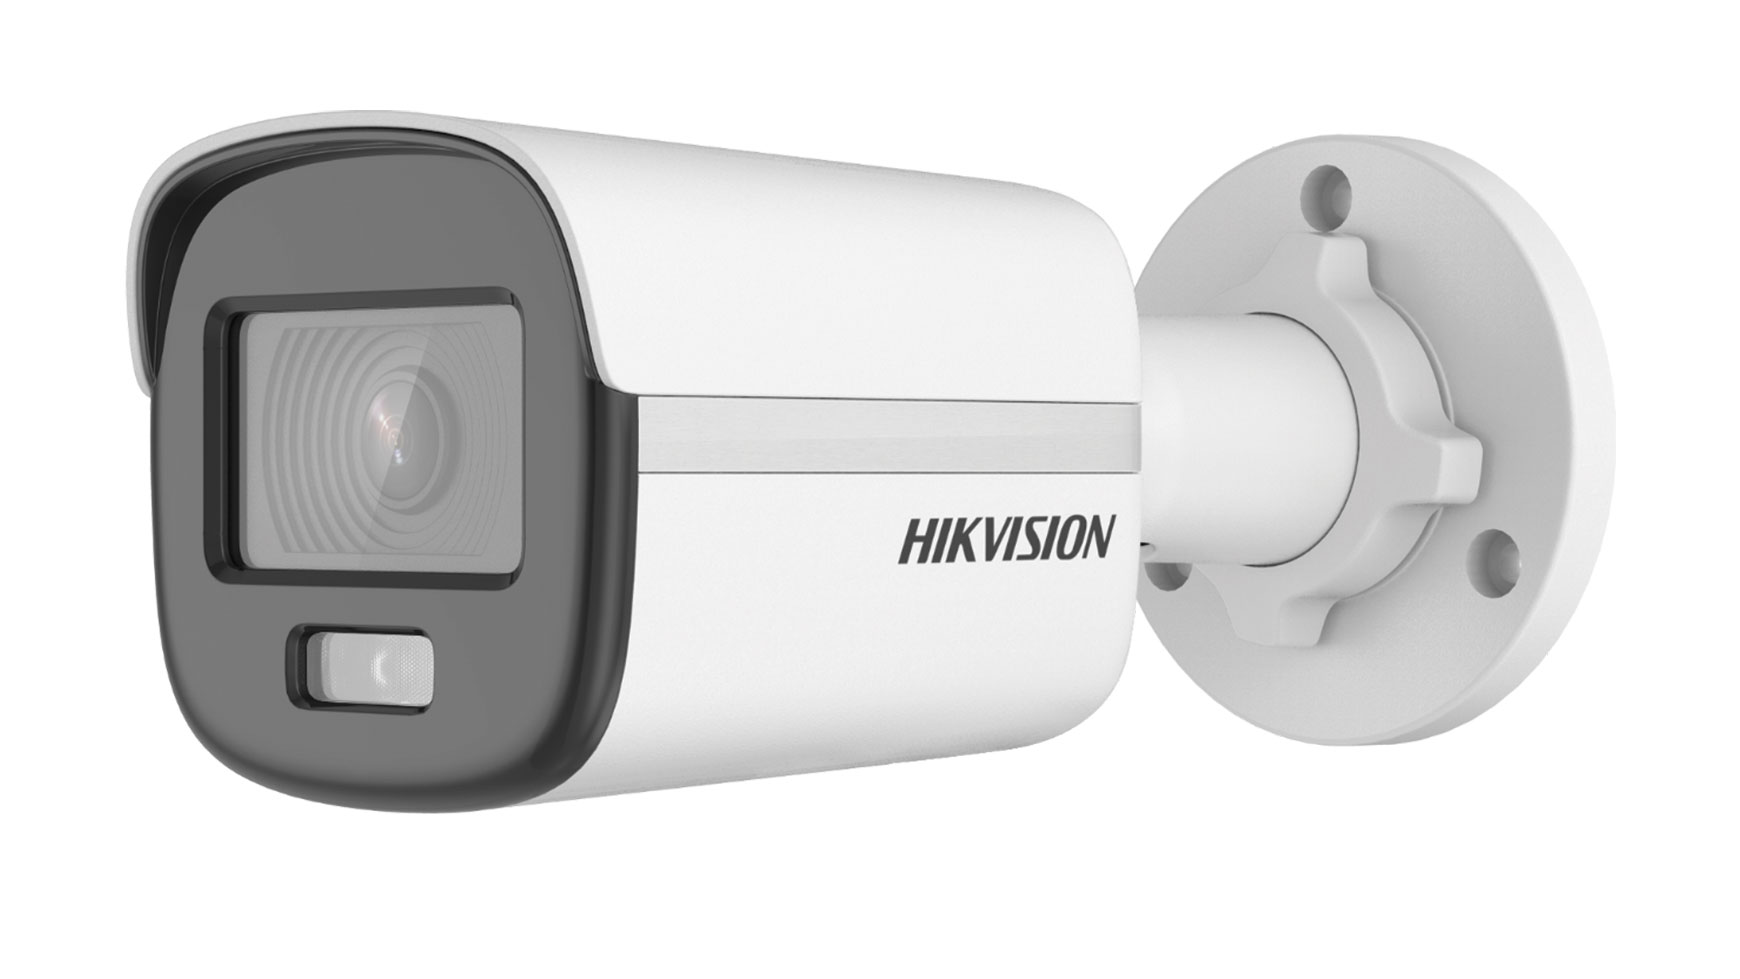 Hikvision DS-2CD1027G0-L(2.8mm)(C) - 2MP mrežna kamera u bullet kućištu sa ColorVu tehnologijom.